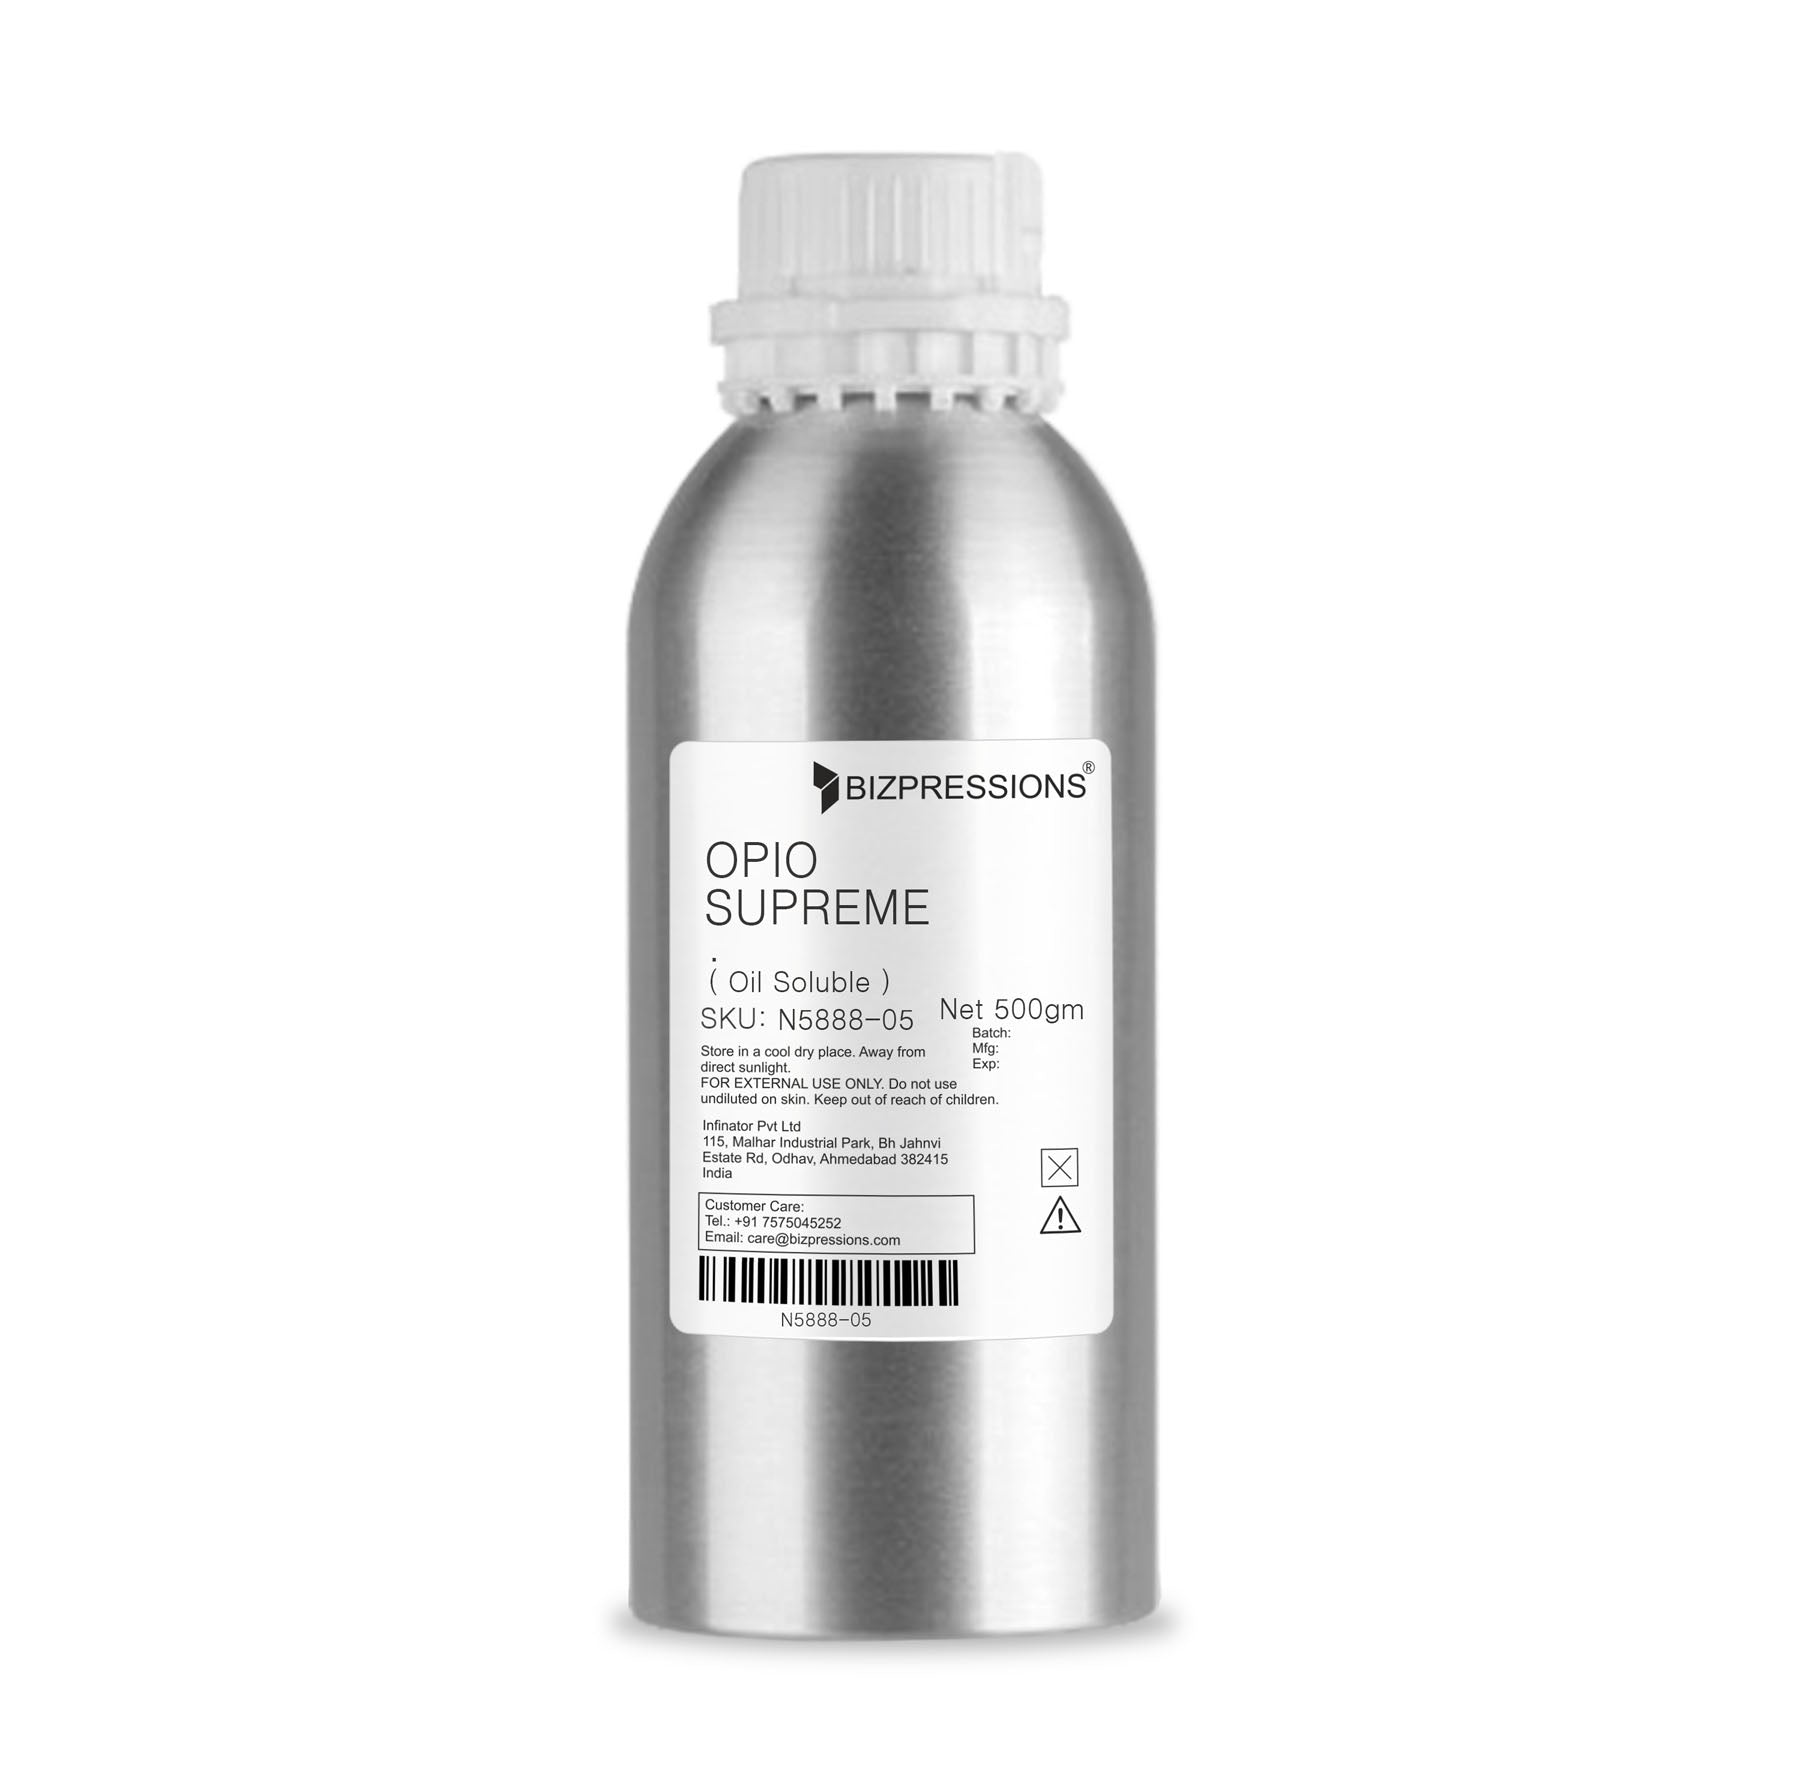 OPIO SUPREME - Fragrance ( Oil Soluble ) - 500 gm